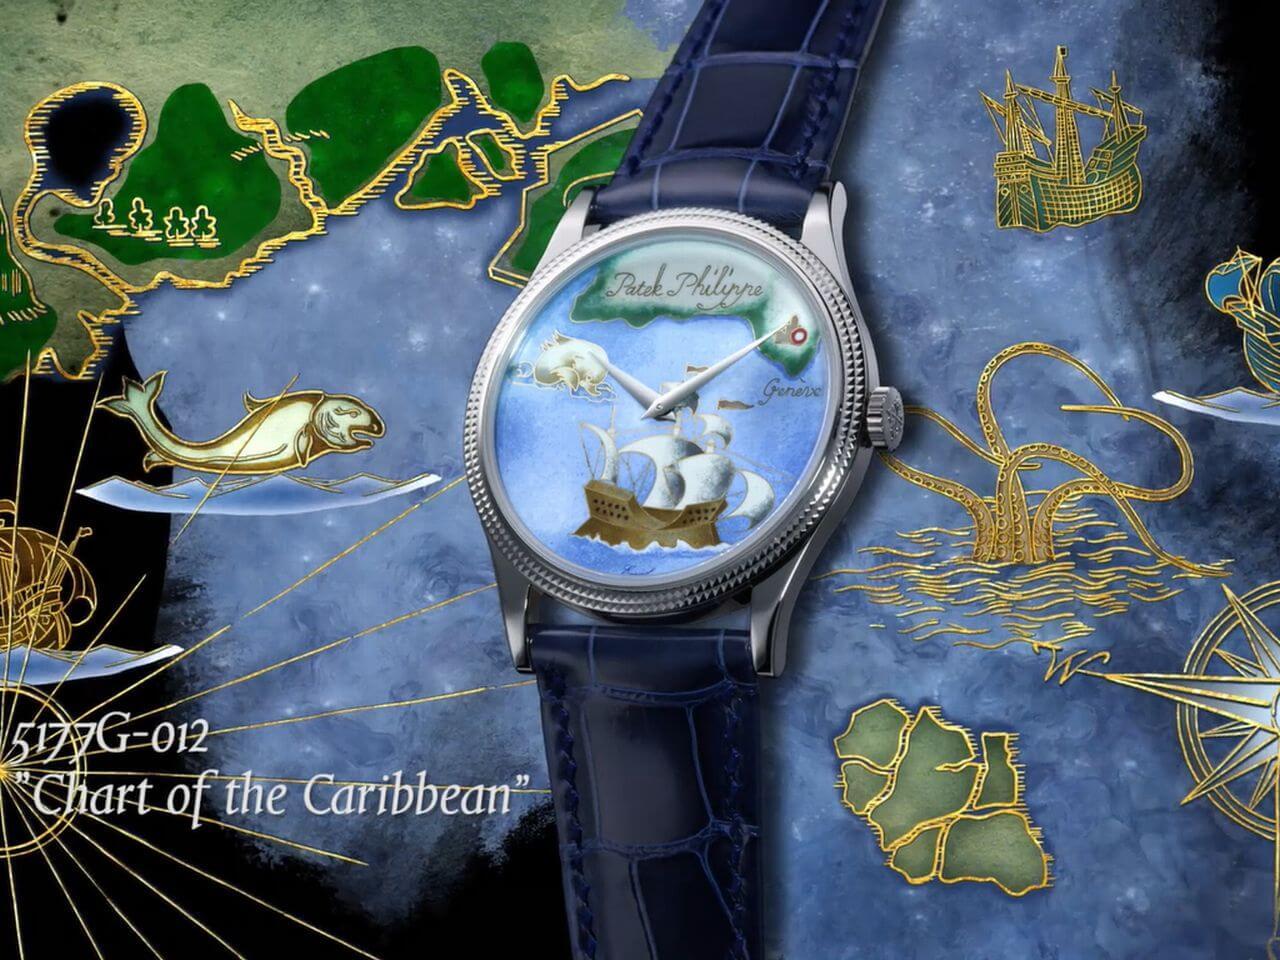 パテック・フィリップ（PATEK PHILIPPE）5177G-012 カラトラバ ”カリブ海図” バーゼルワールド2018発表の希少なレアハンドクラフト